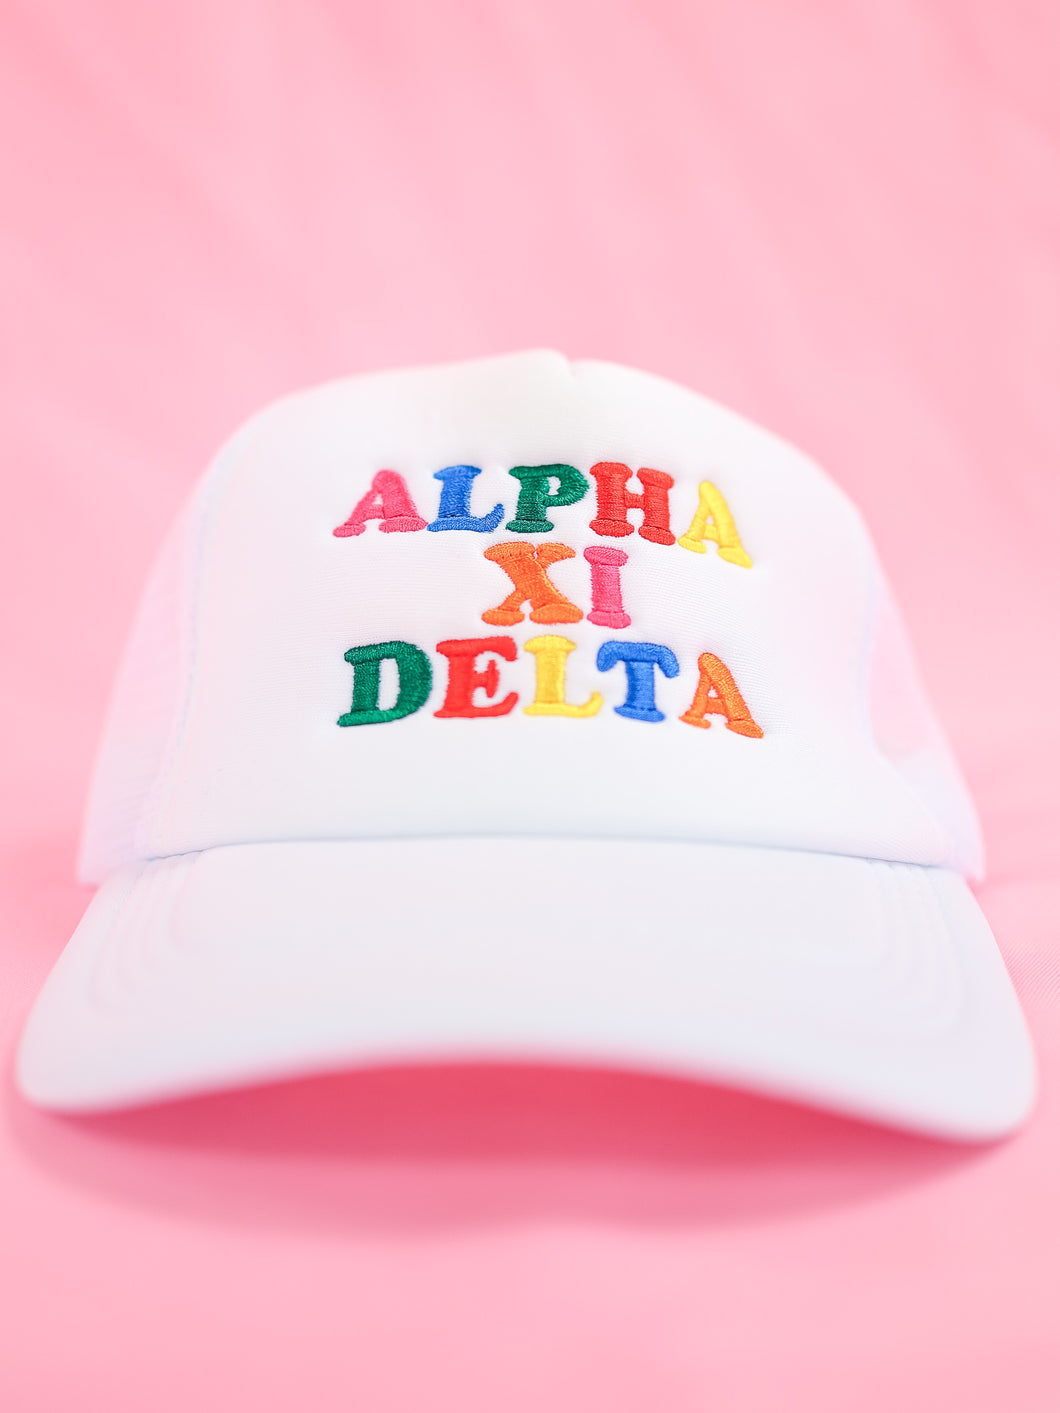 Alpha Xi Delta Fun Times Trucker Hat